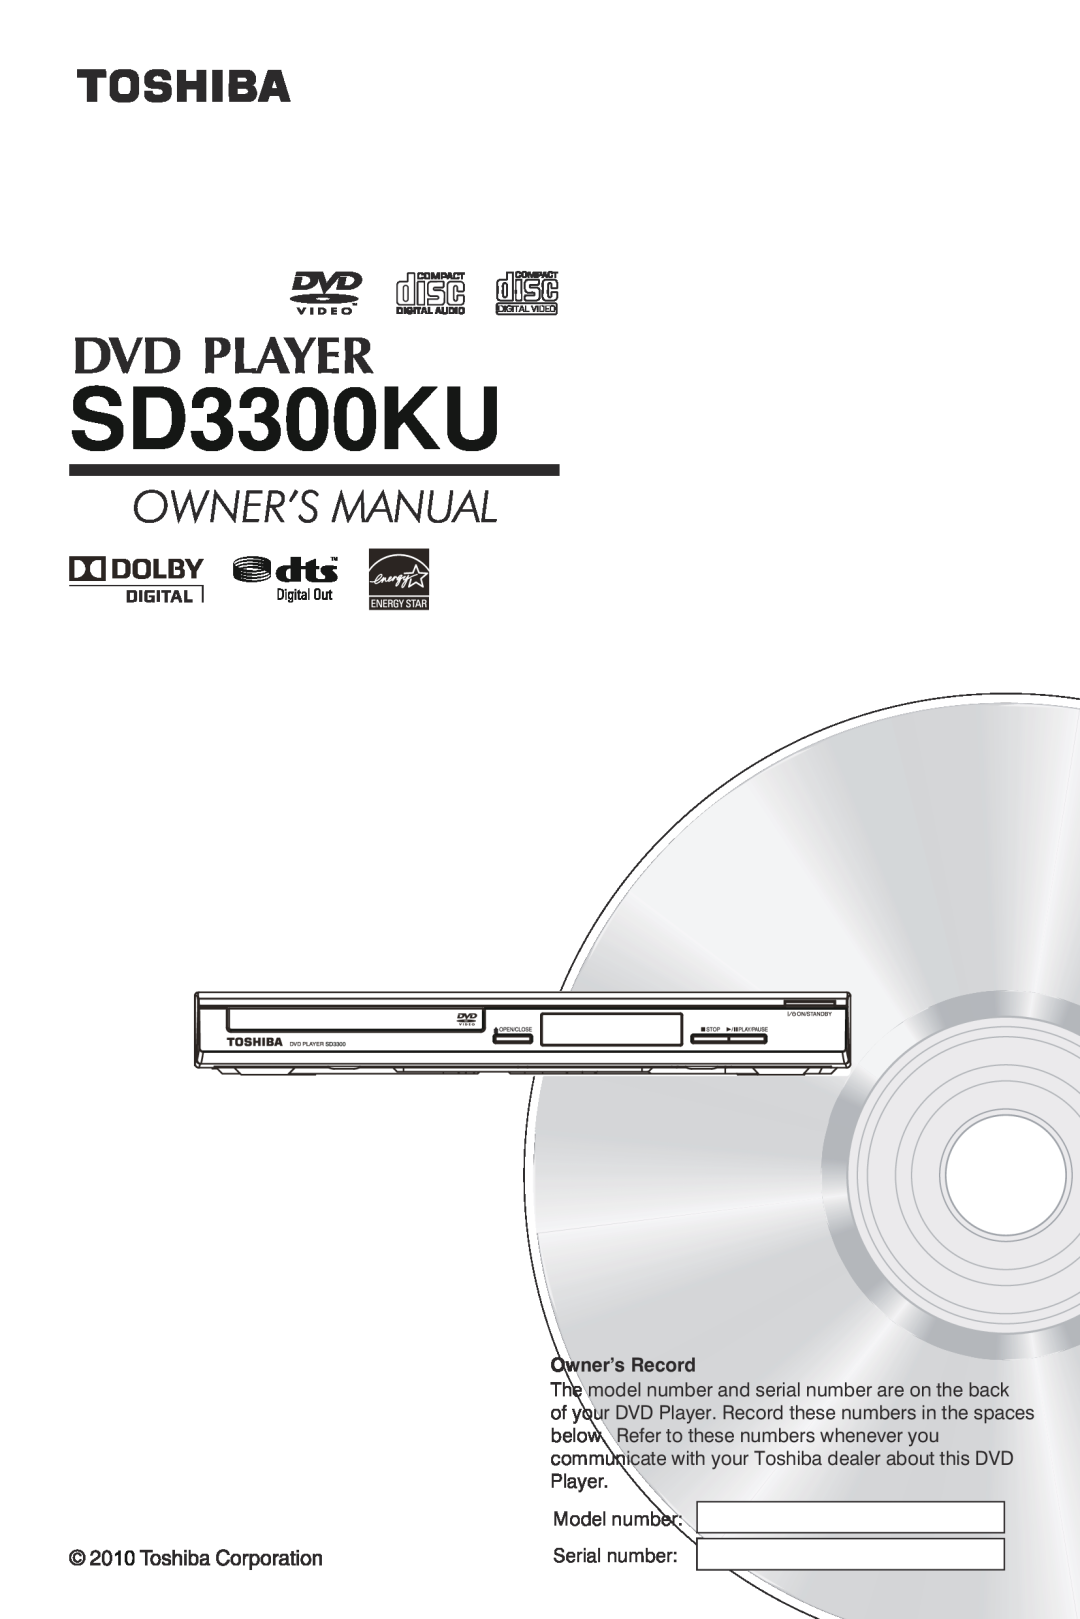 Toshiba SD3300 manual Preliminary, Advantage, Progressive Scan DVD Player 